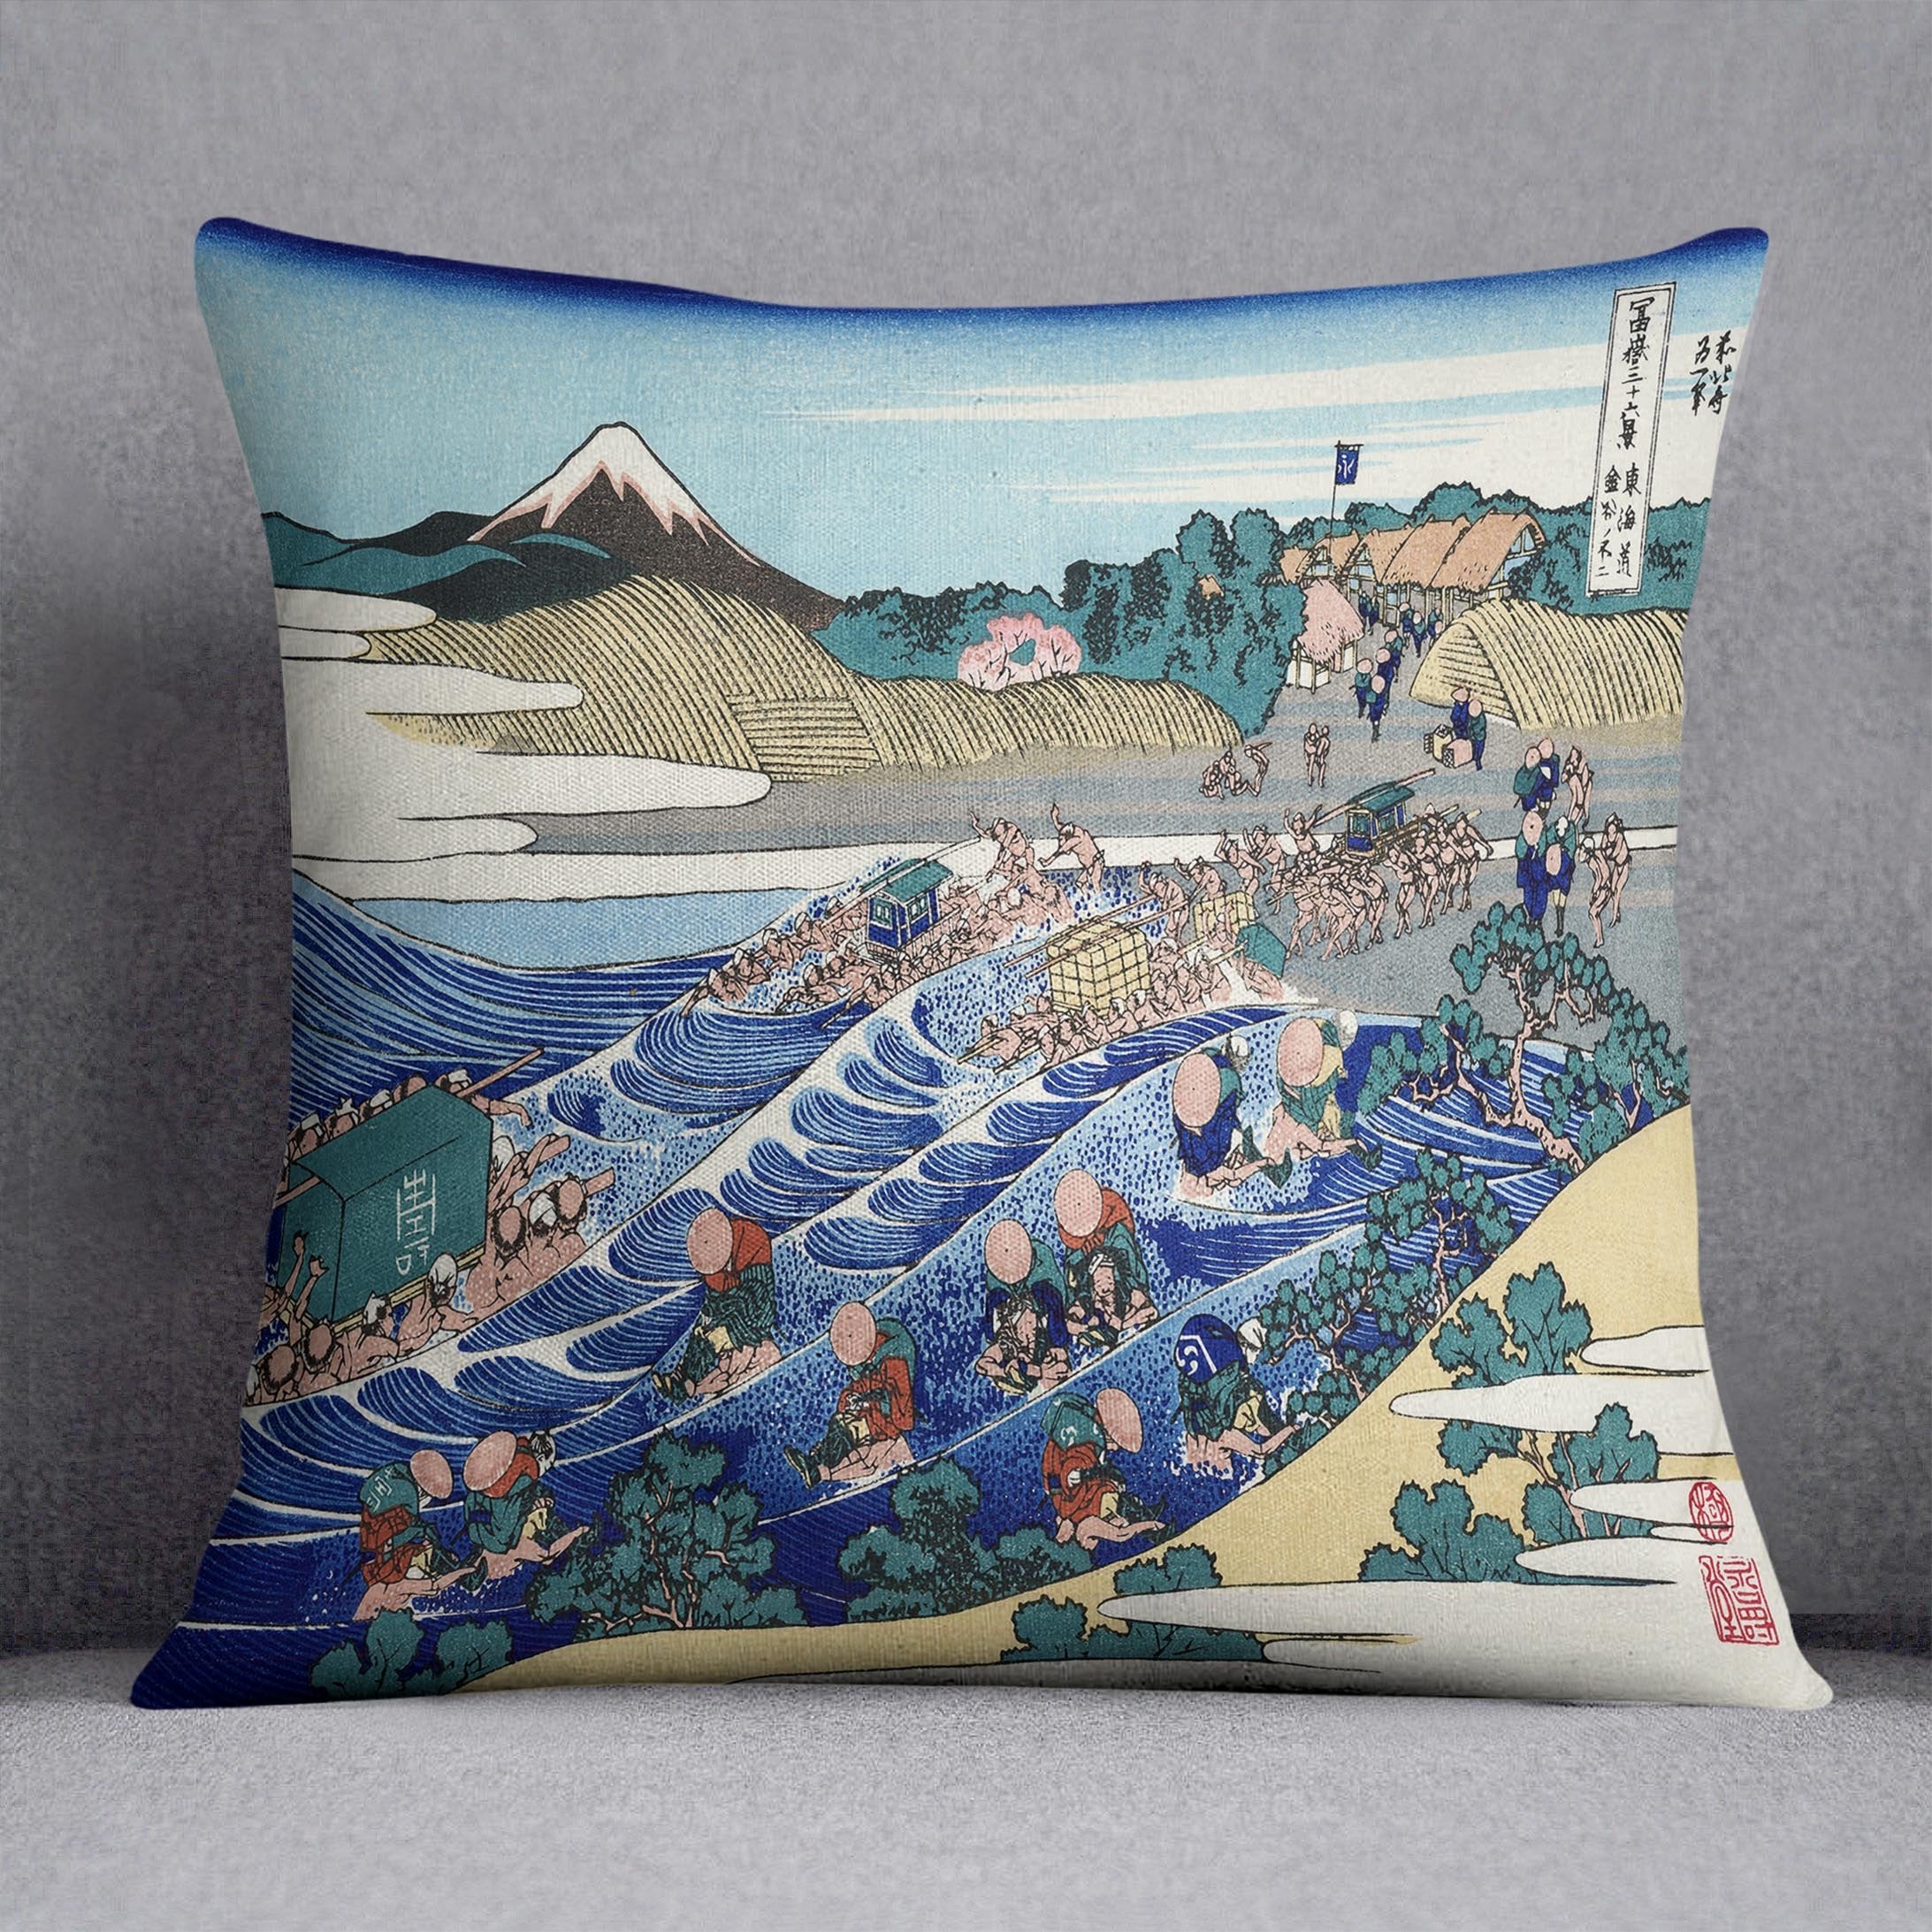 Fuji from Kanaya on Tokaido by Hokusai Throw Pillow